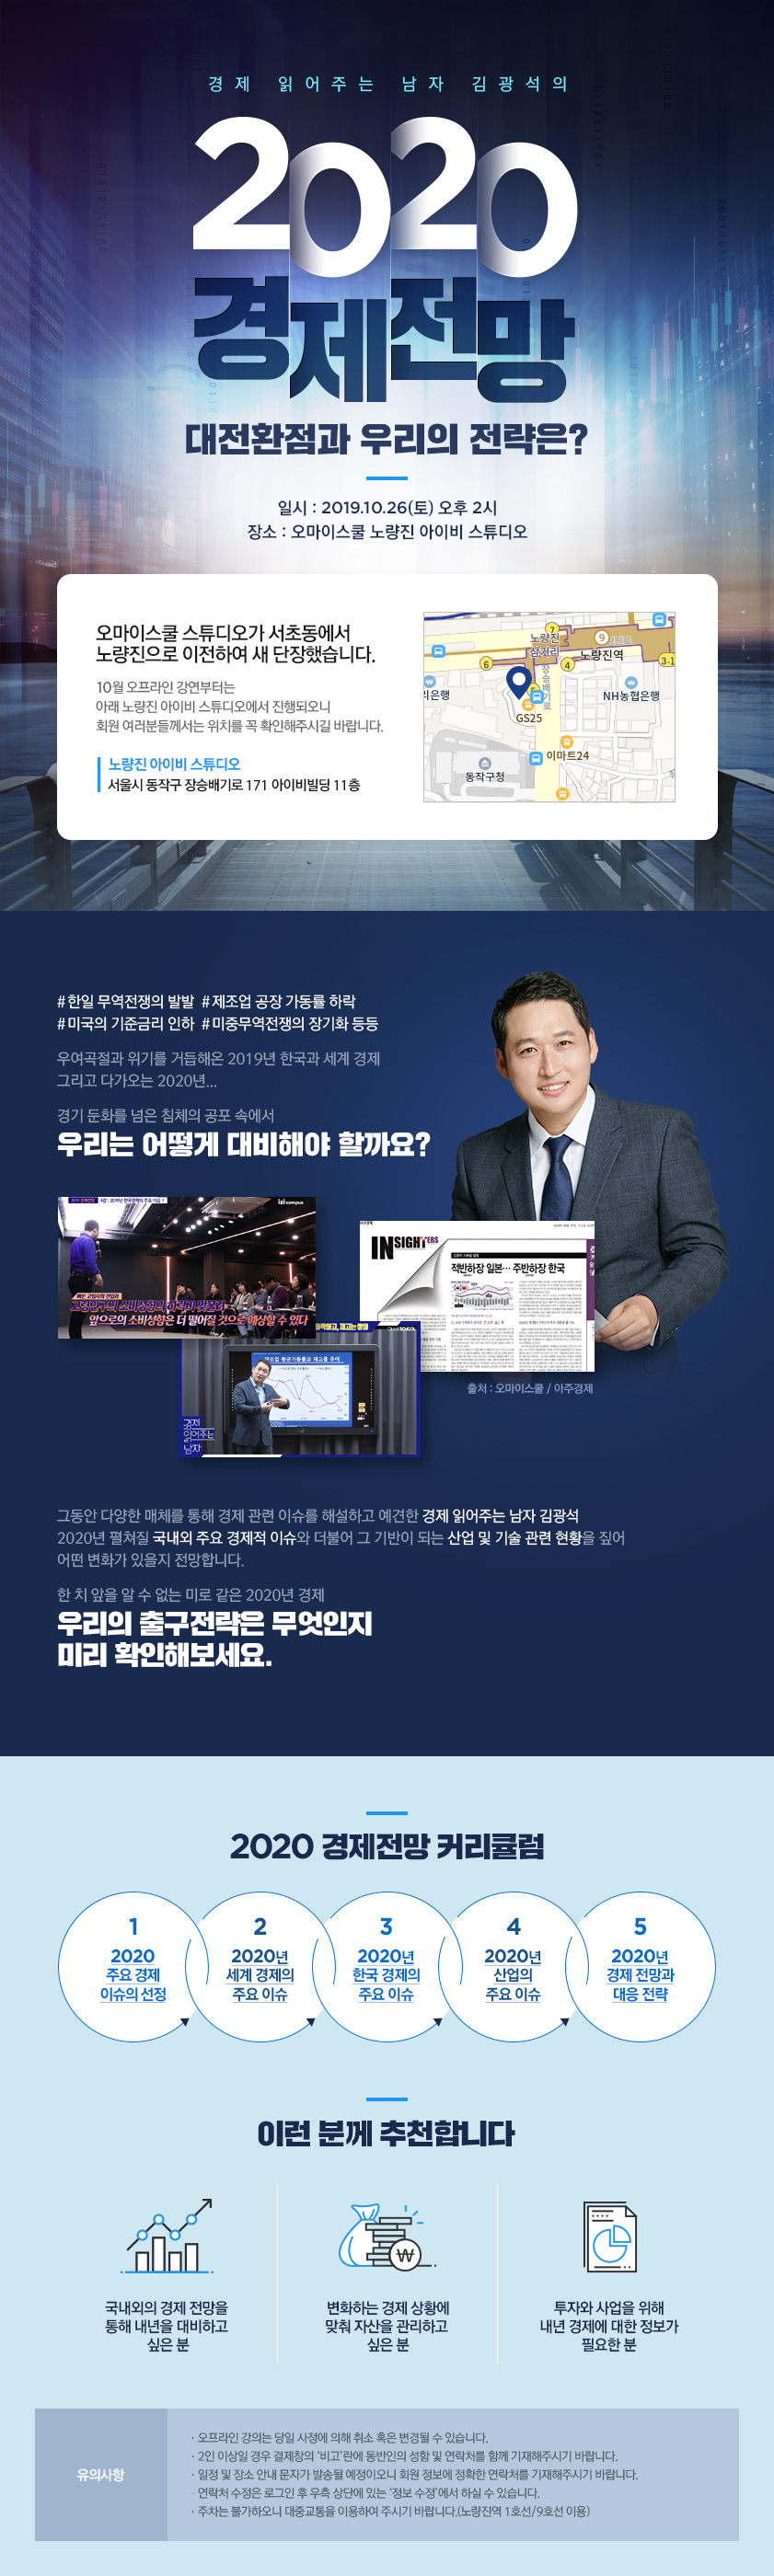  김광석T_2020년도 세계 및 한국 경제 이슈에 대한 소개 및 향후 경제에 대한 전망을 이야기하는 강의